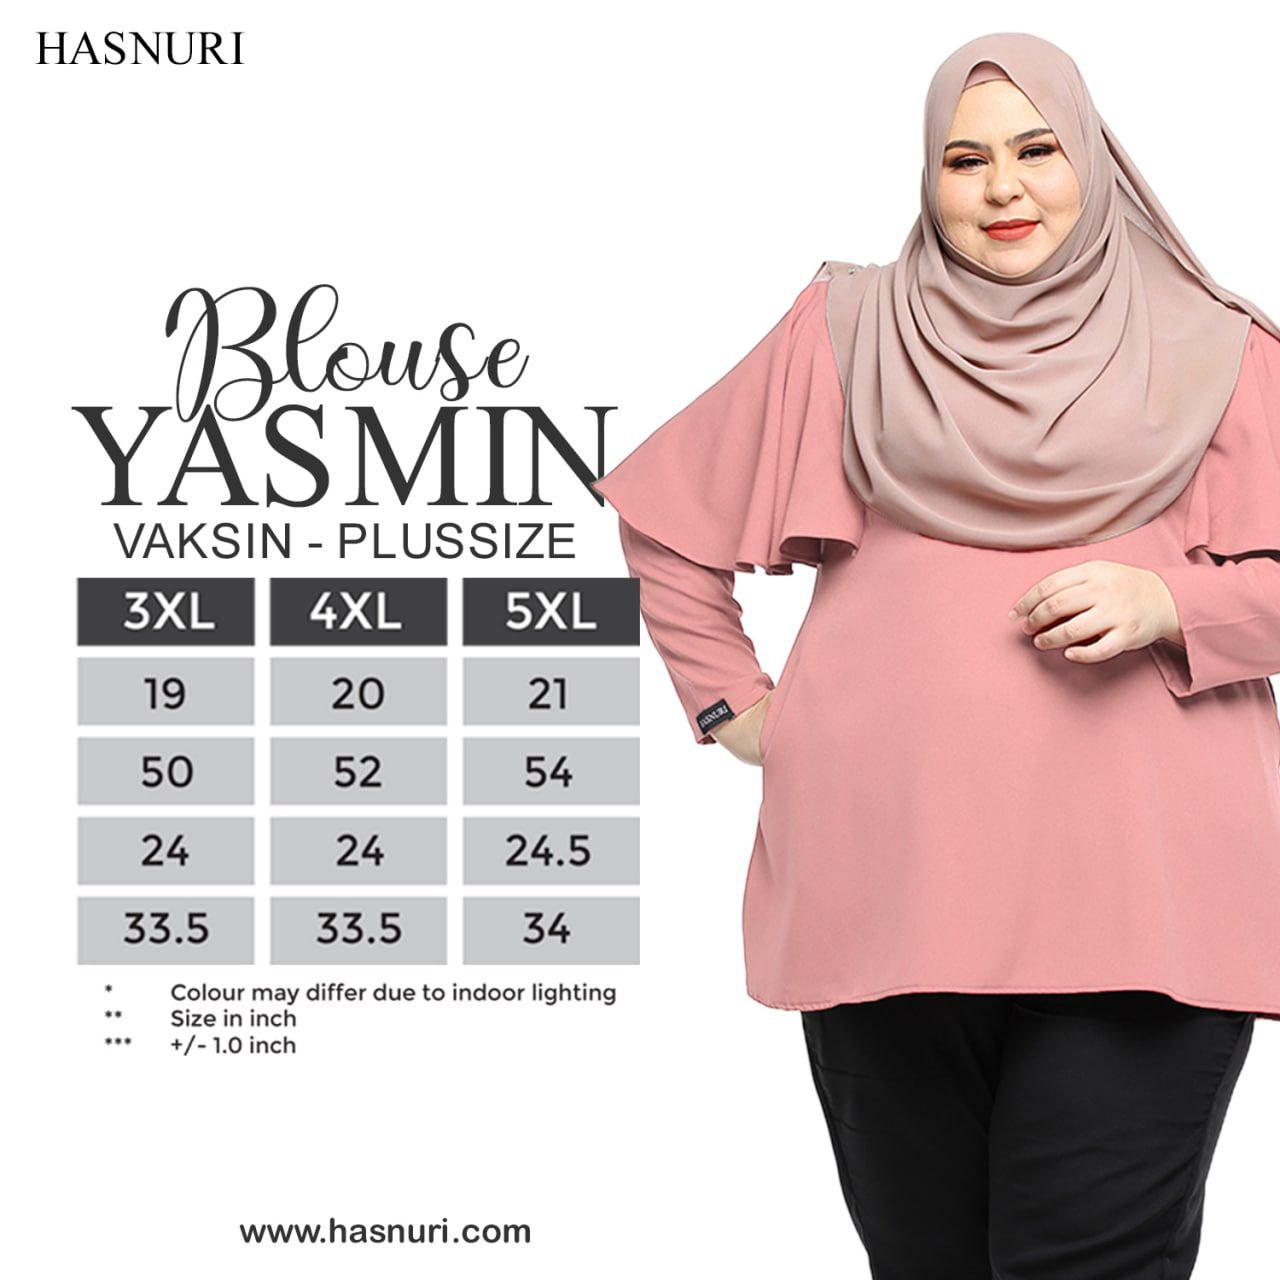 Blouse Yasmin Plus Size - Dark Orange